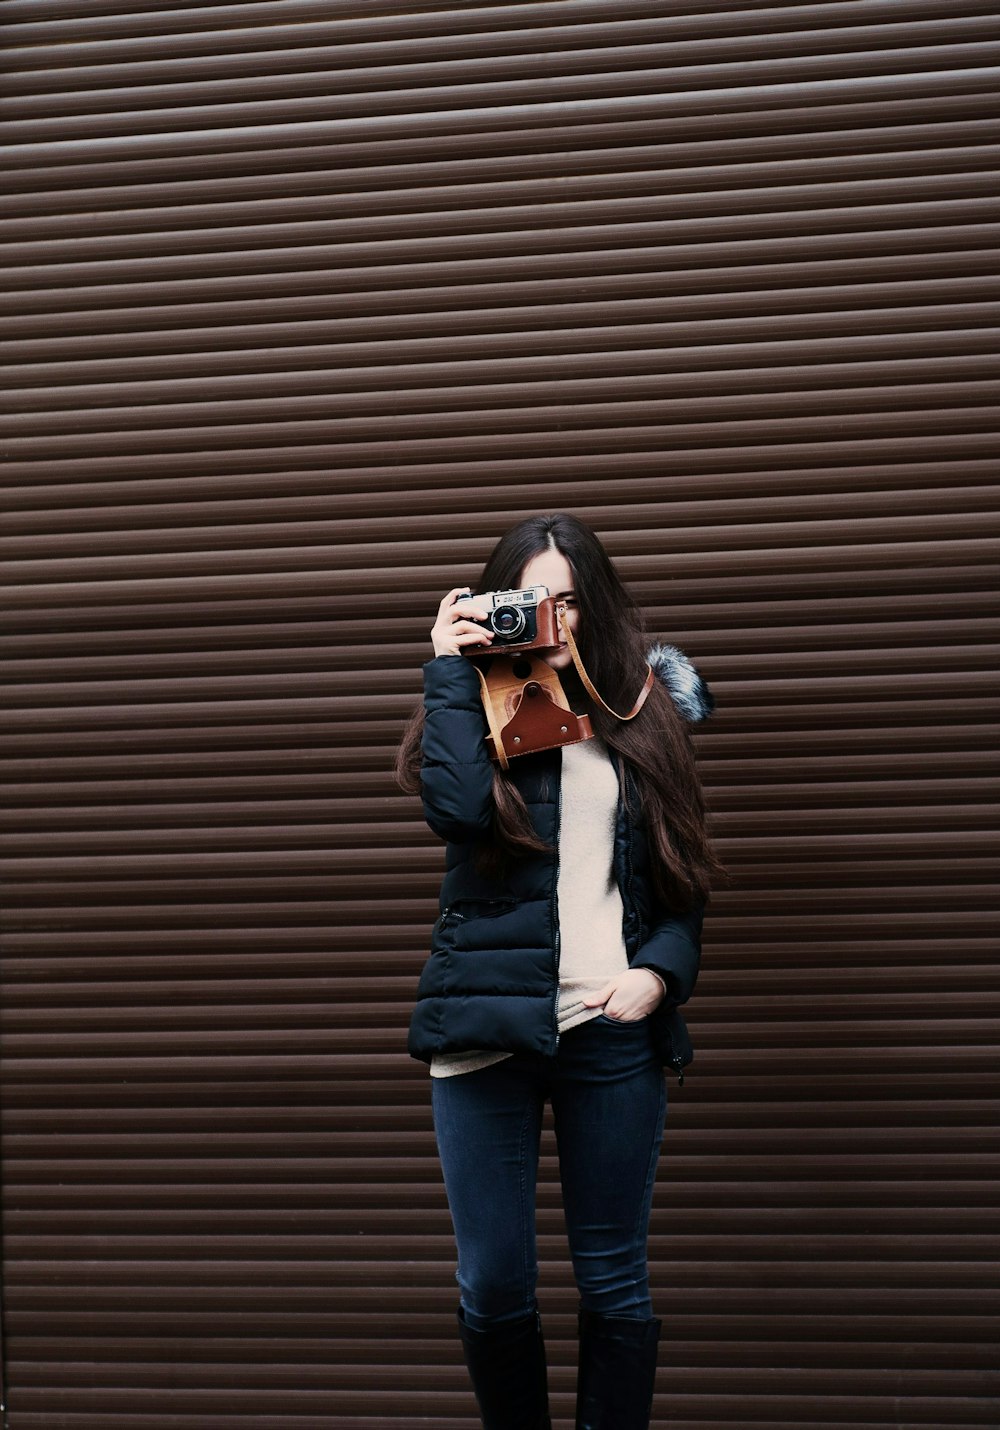 写真を撮るカメラを持って立っている女性